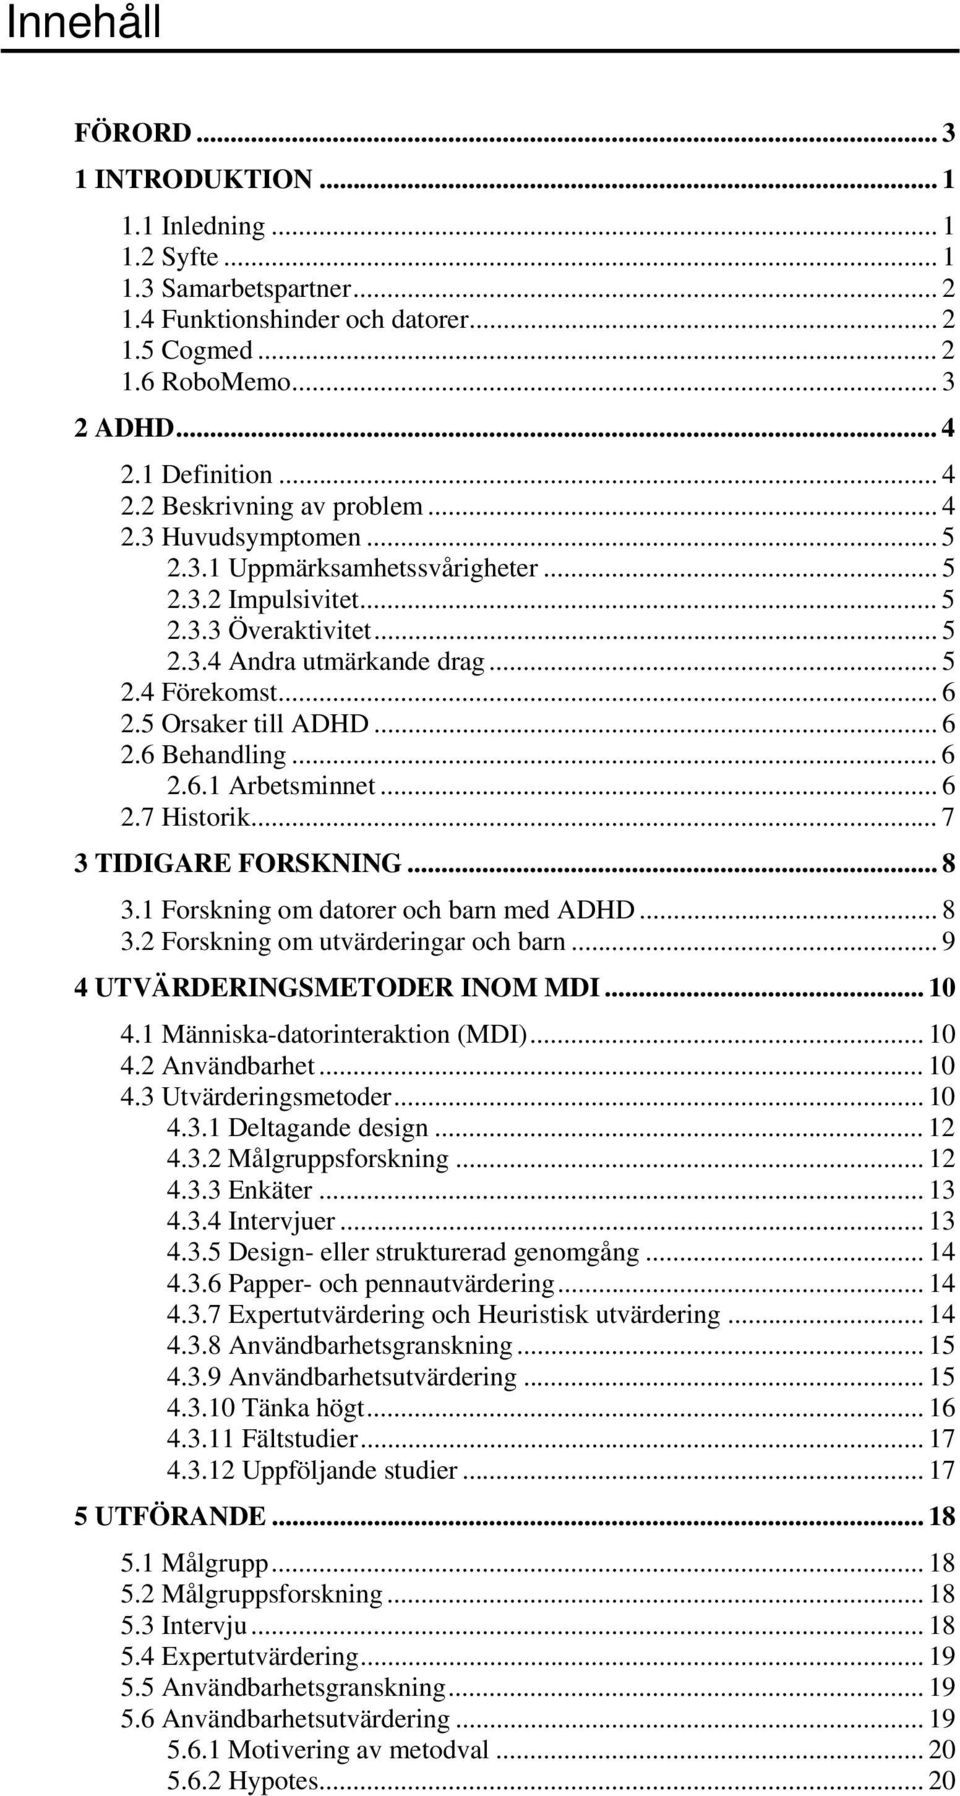 5 Orsaker till ADHD... 6 2.6 Behandling... 6 2.6.1 Arbetsminnet... 6 2.7 Historik... 7 3 TIDIGARE FORSKNING... 8 3.1 Forskning om datorer och barn med ADHD... 8 3.2 Forskning om utvärderingar och barn.